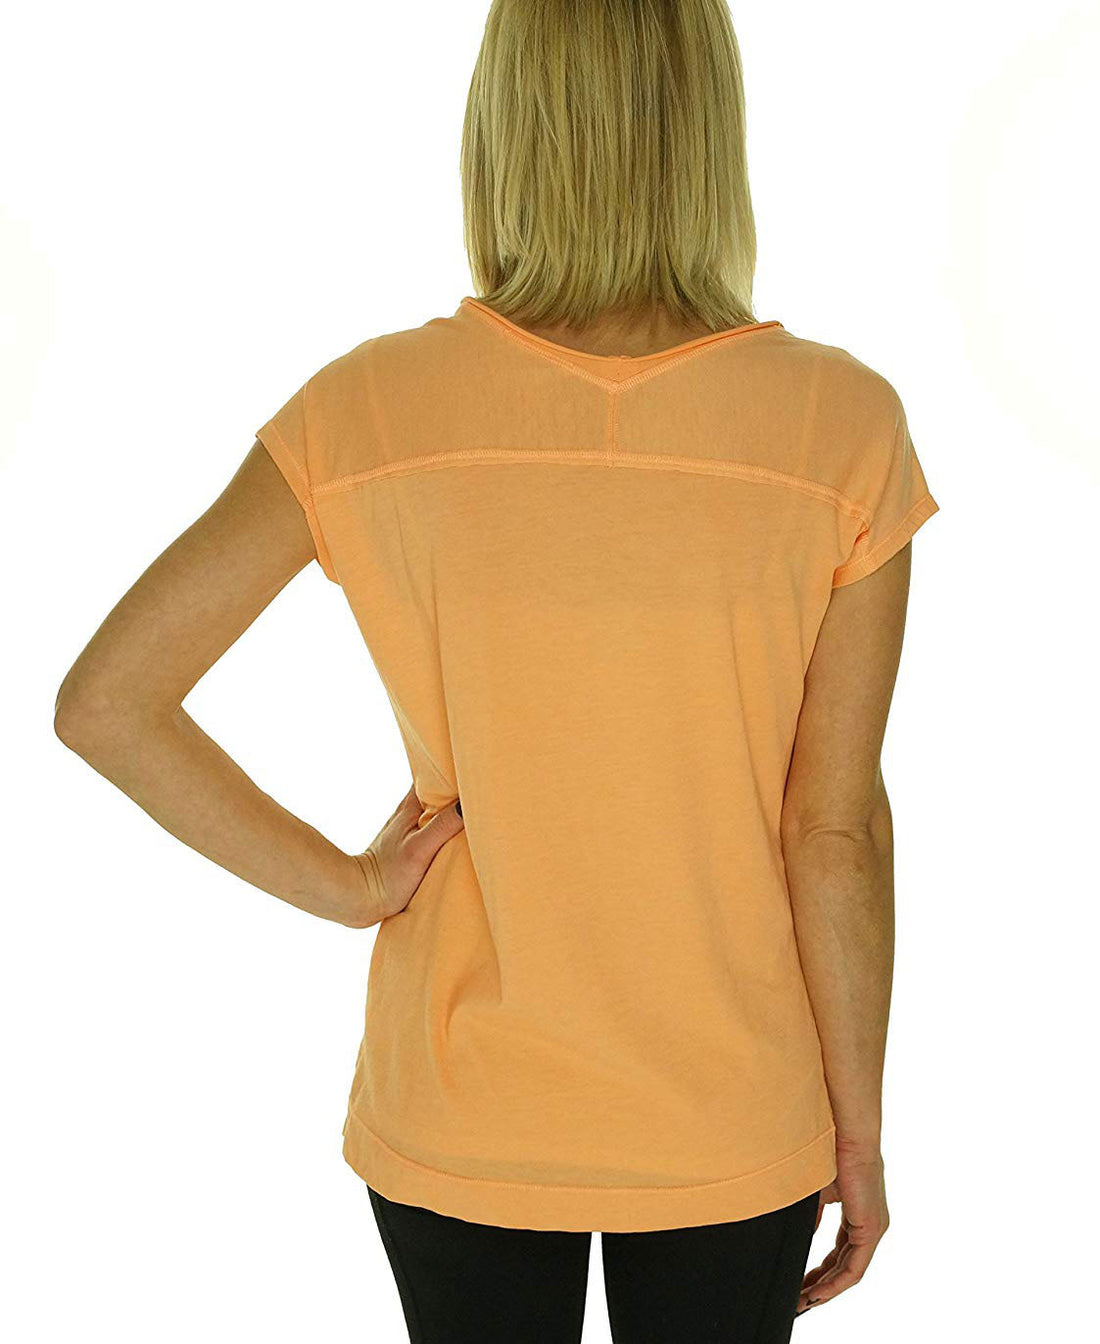 Calvin Klein Women's Cotton/ Polyester T-Shirt Top (Medium, Marmalade)